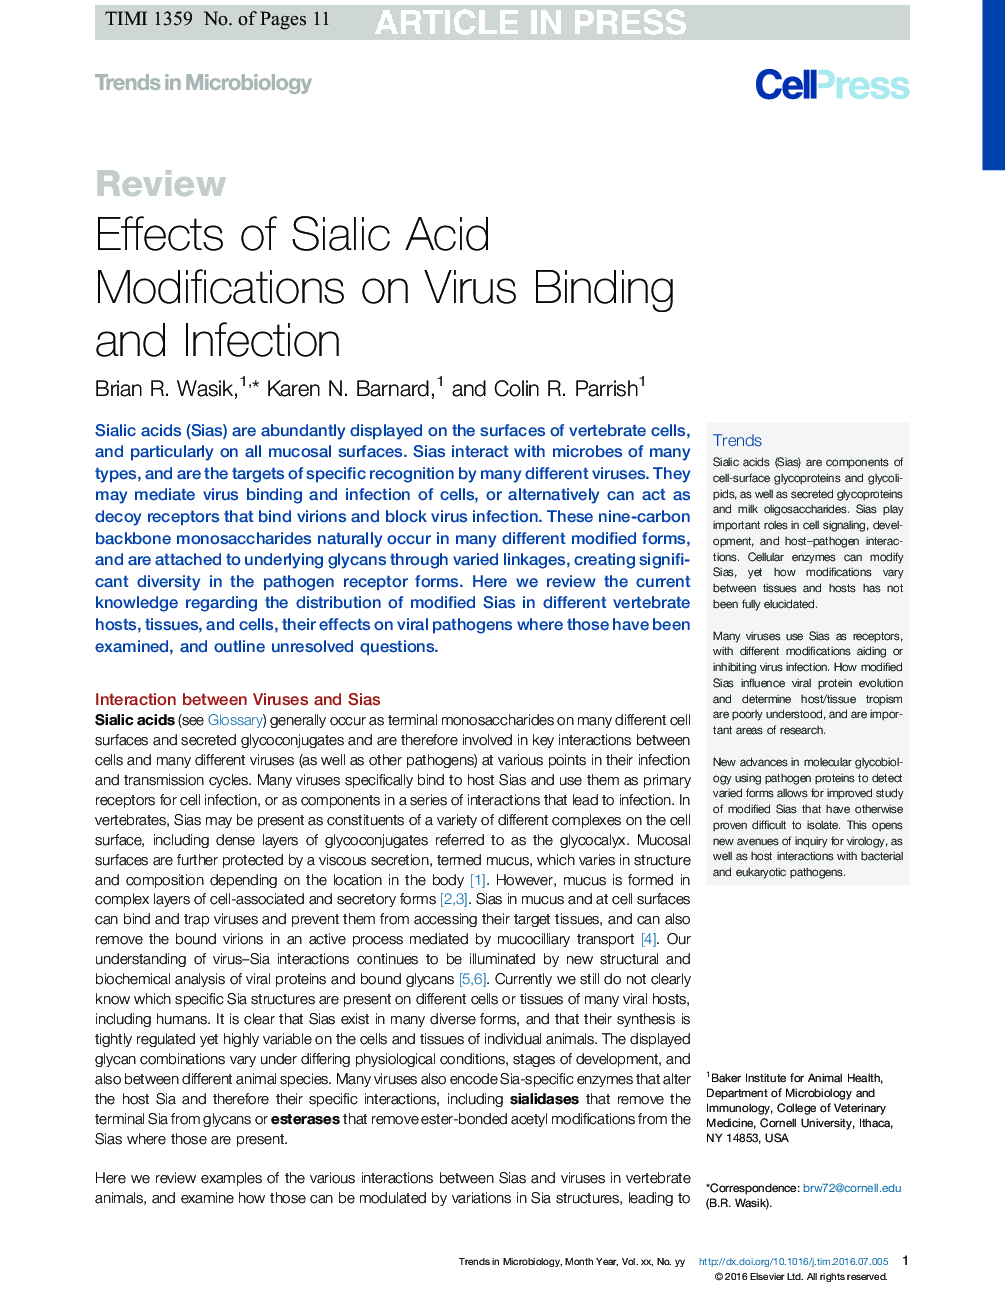 اثرات تغییرات اسید سیالیک در ارتباط با ویروس و عفونت 